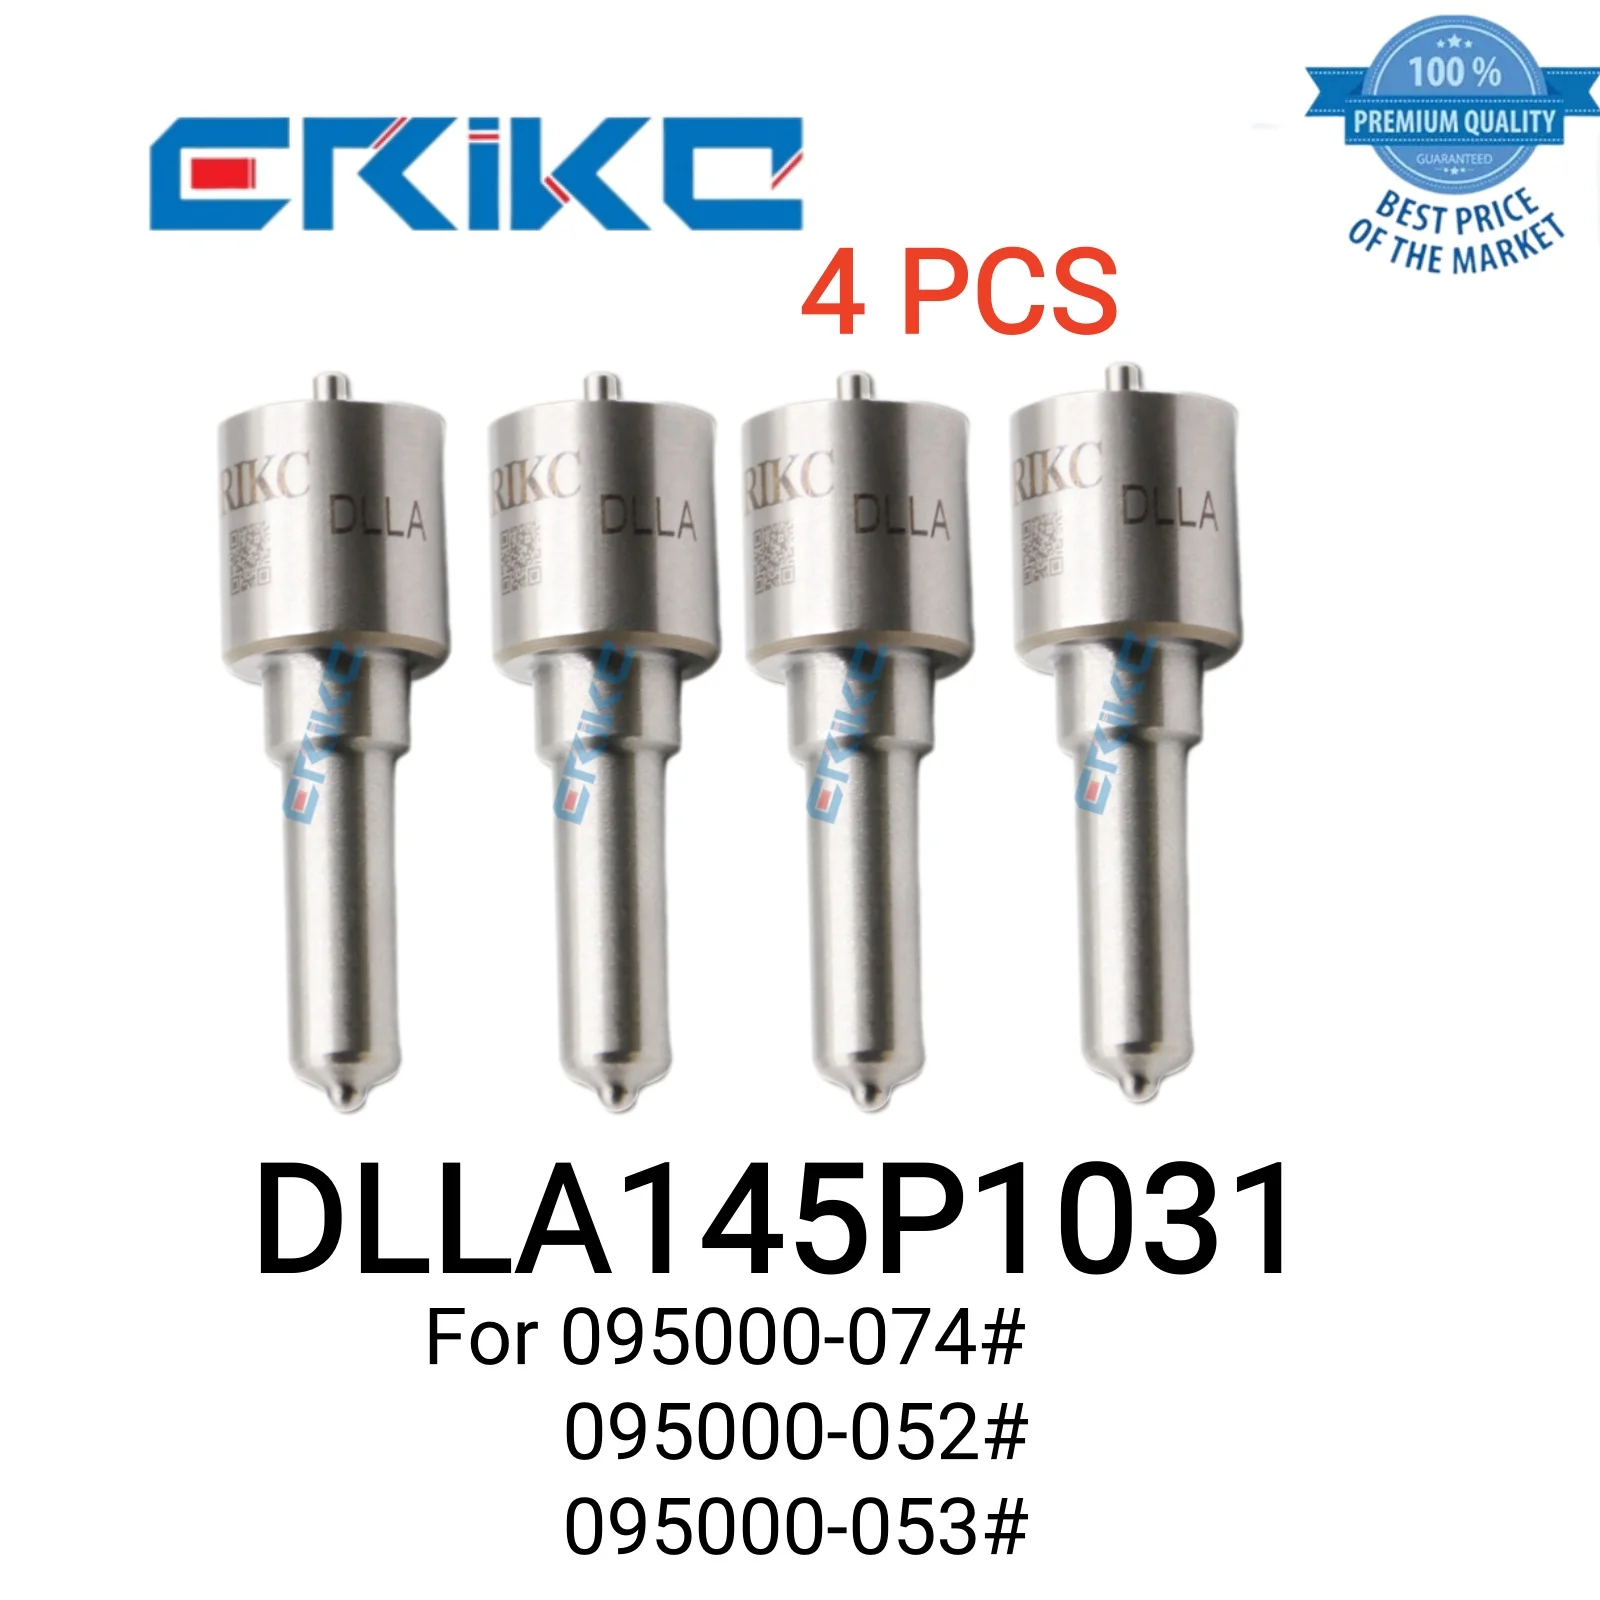 

4 PCS DLLA145P1031 093400-1031 Injectors Nozzle DLLA 145 P 1031 Needle Jet Nozzle DLLA 145P1031 for 095000-074# 052# 053#